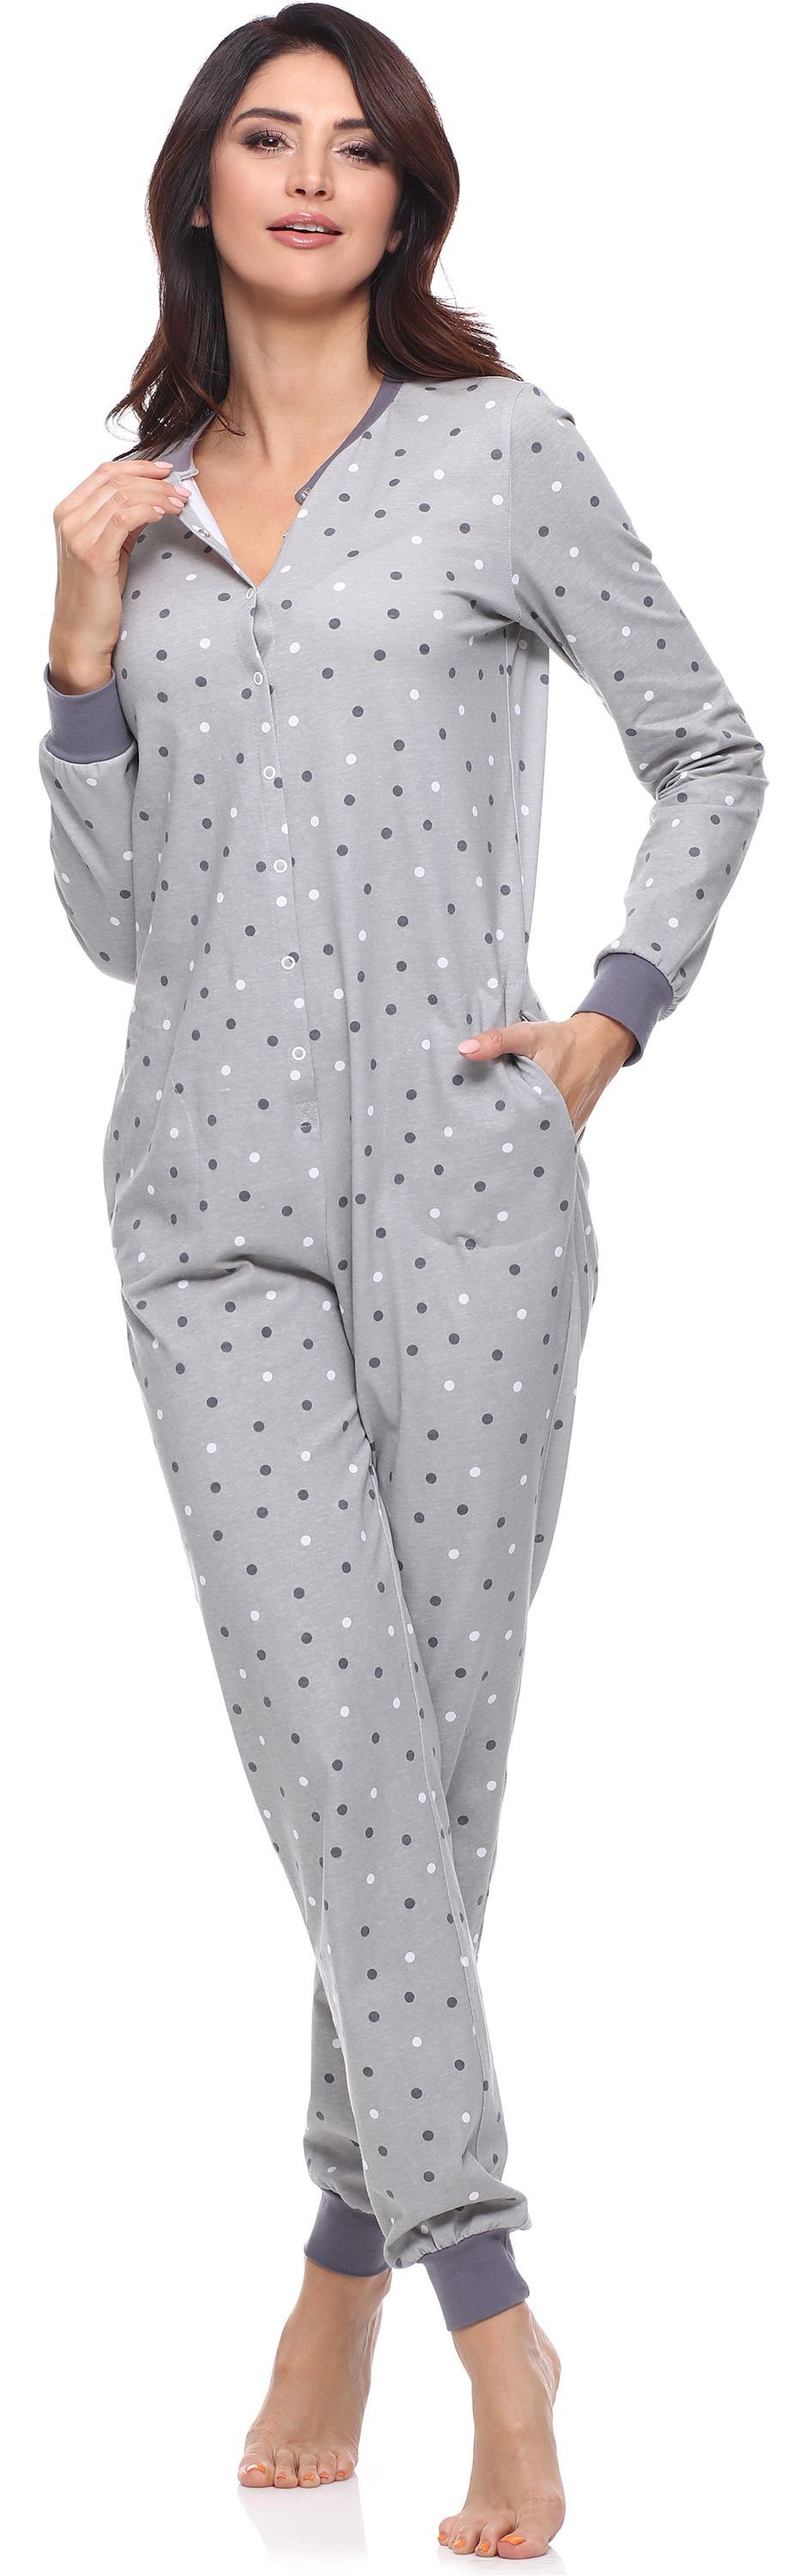 Schlafoverall Schlafanzug Schlafanzug Damen Merry Style Strampelanzug MS10-187 Grau/Punkten